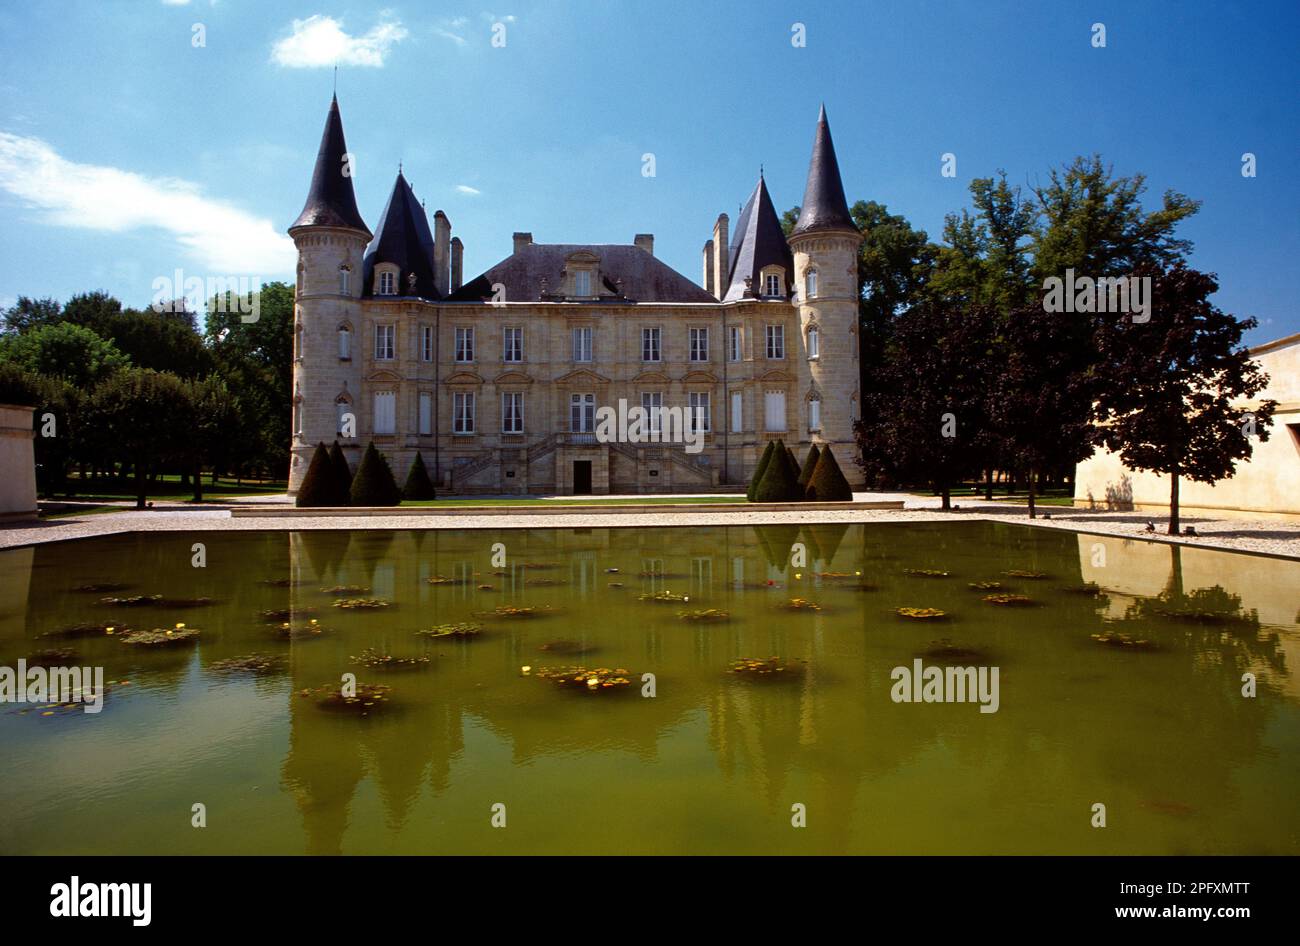 Vignoble de Bordeaux France Chateau Pichon-Longueville Historic Vineyard of Bordeaux Stock Photo